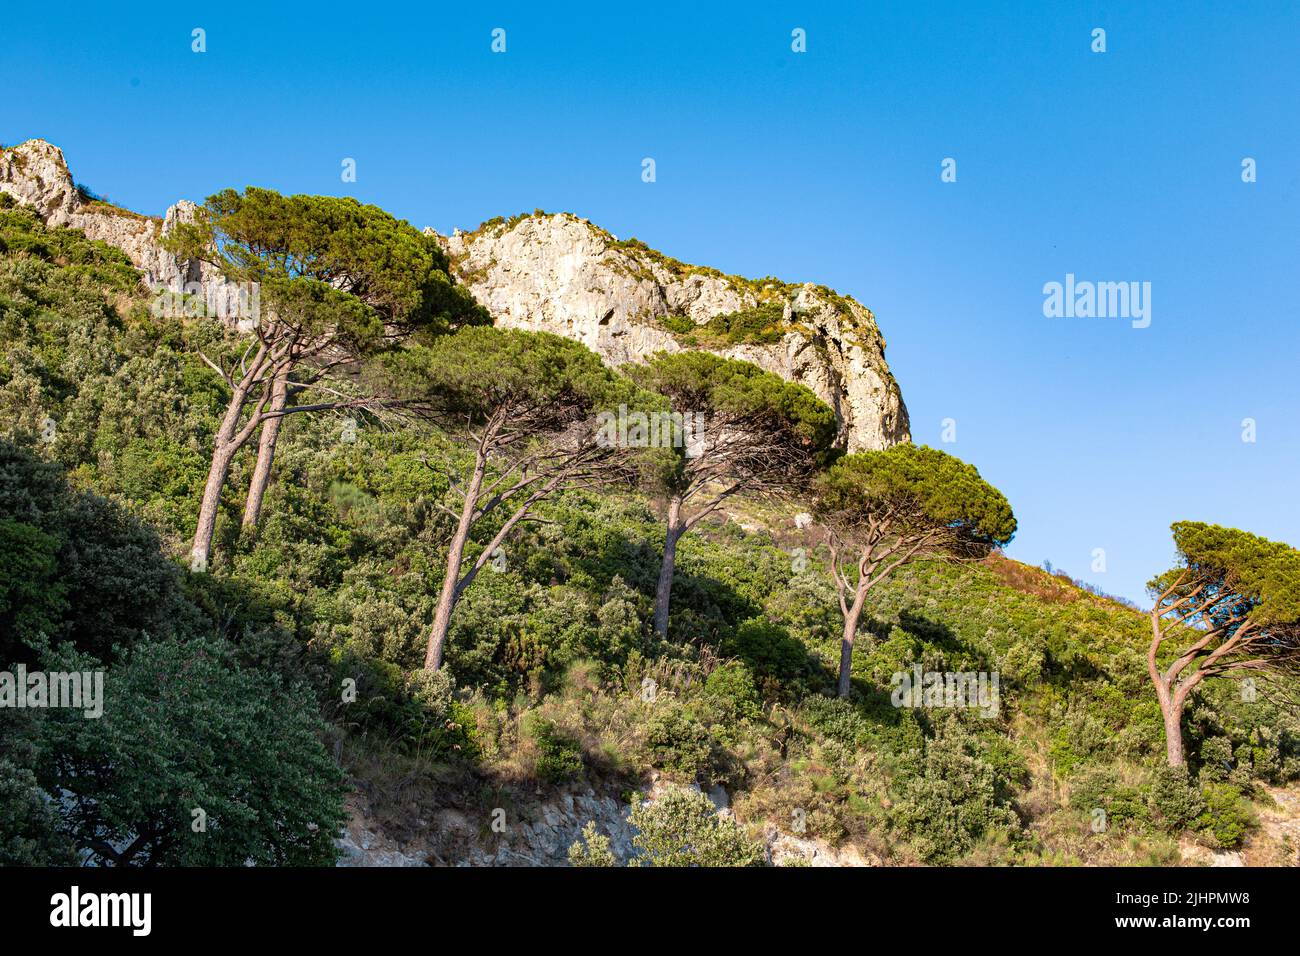 Paisaje mediterráneo con acantilados, árboles y cielo azul Foto de stock